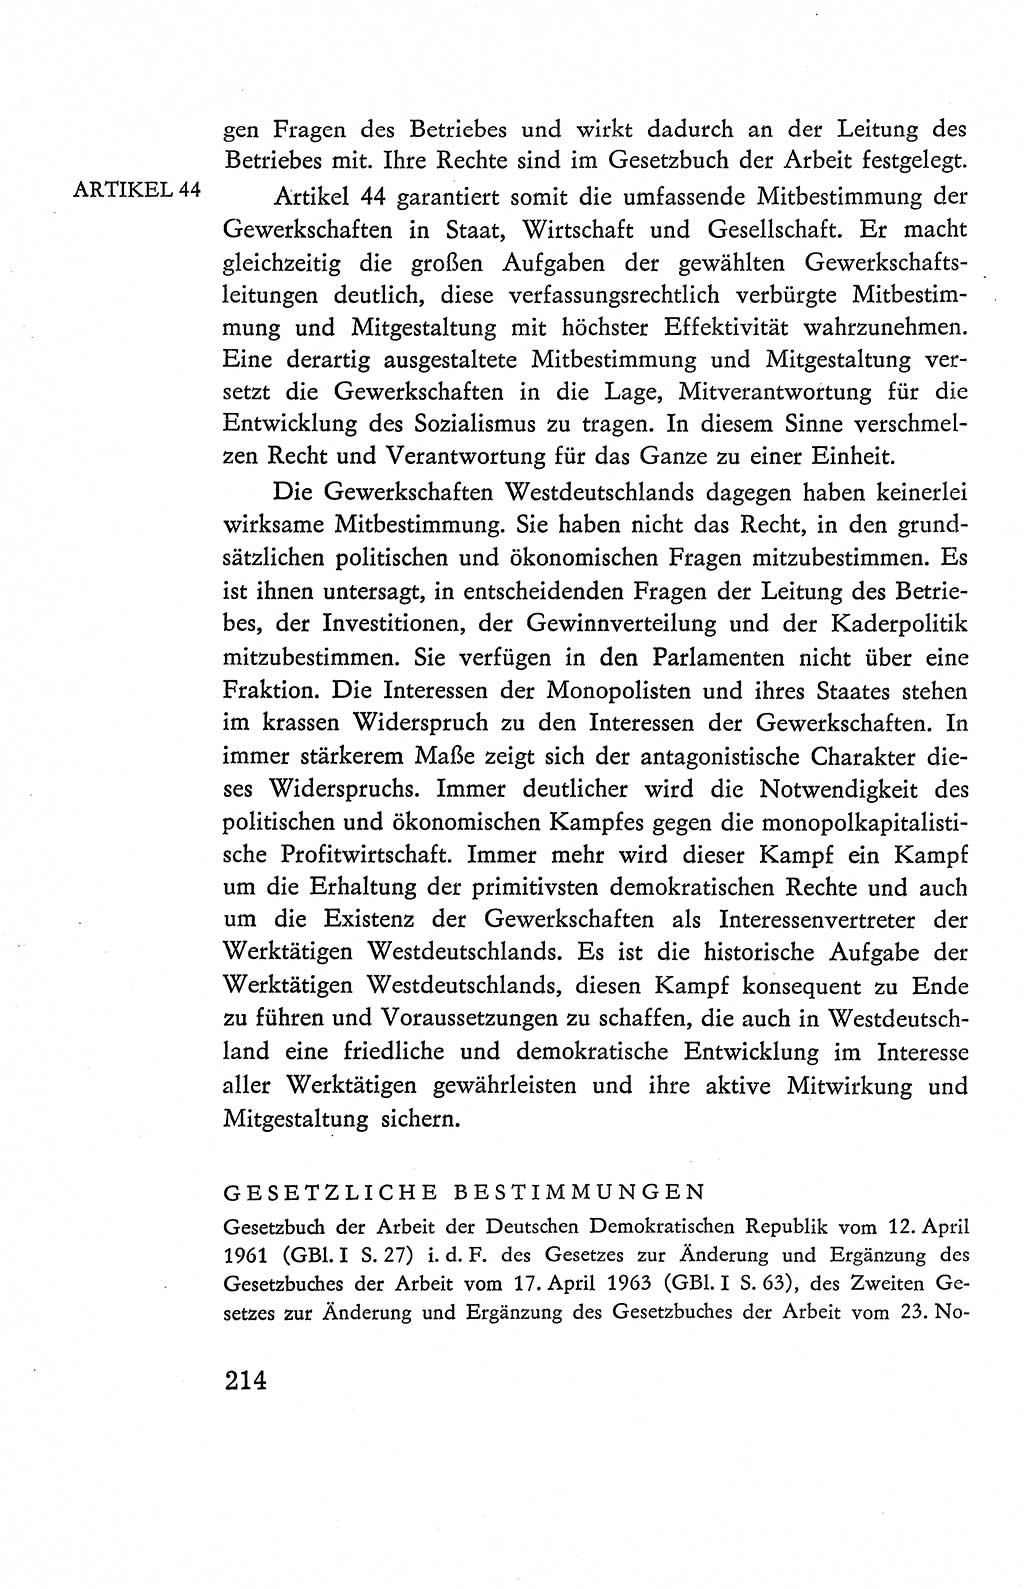 Verfassung der Deutschen Demokratischen Republik (DDR), Dokumente, Kommentar 1969, Band 2, Seite 214 (Verf. DDR Dok. Komm. 1969, Bd. 2, S. 214)